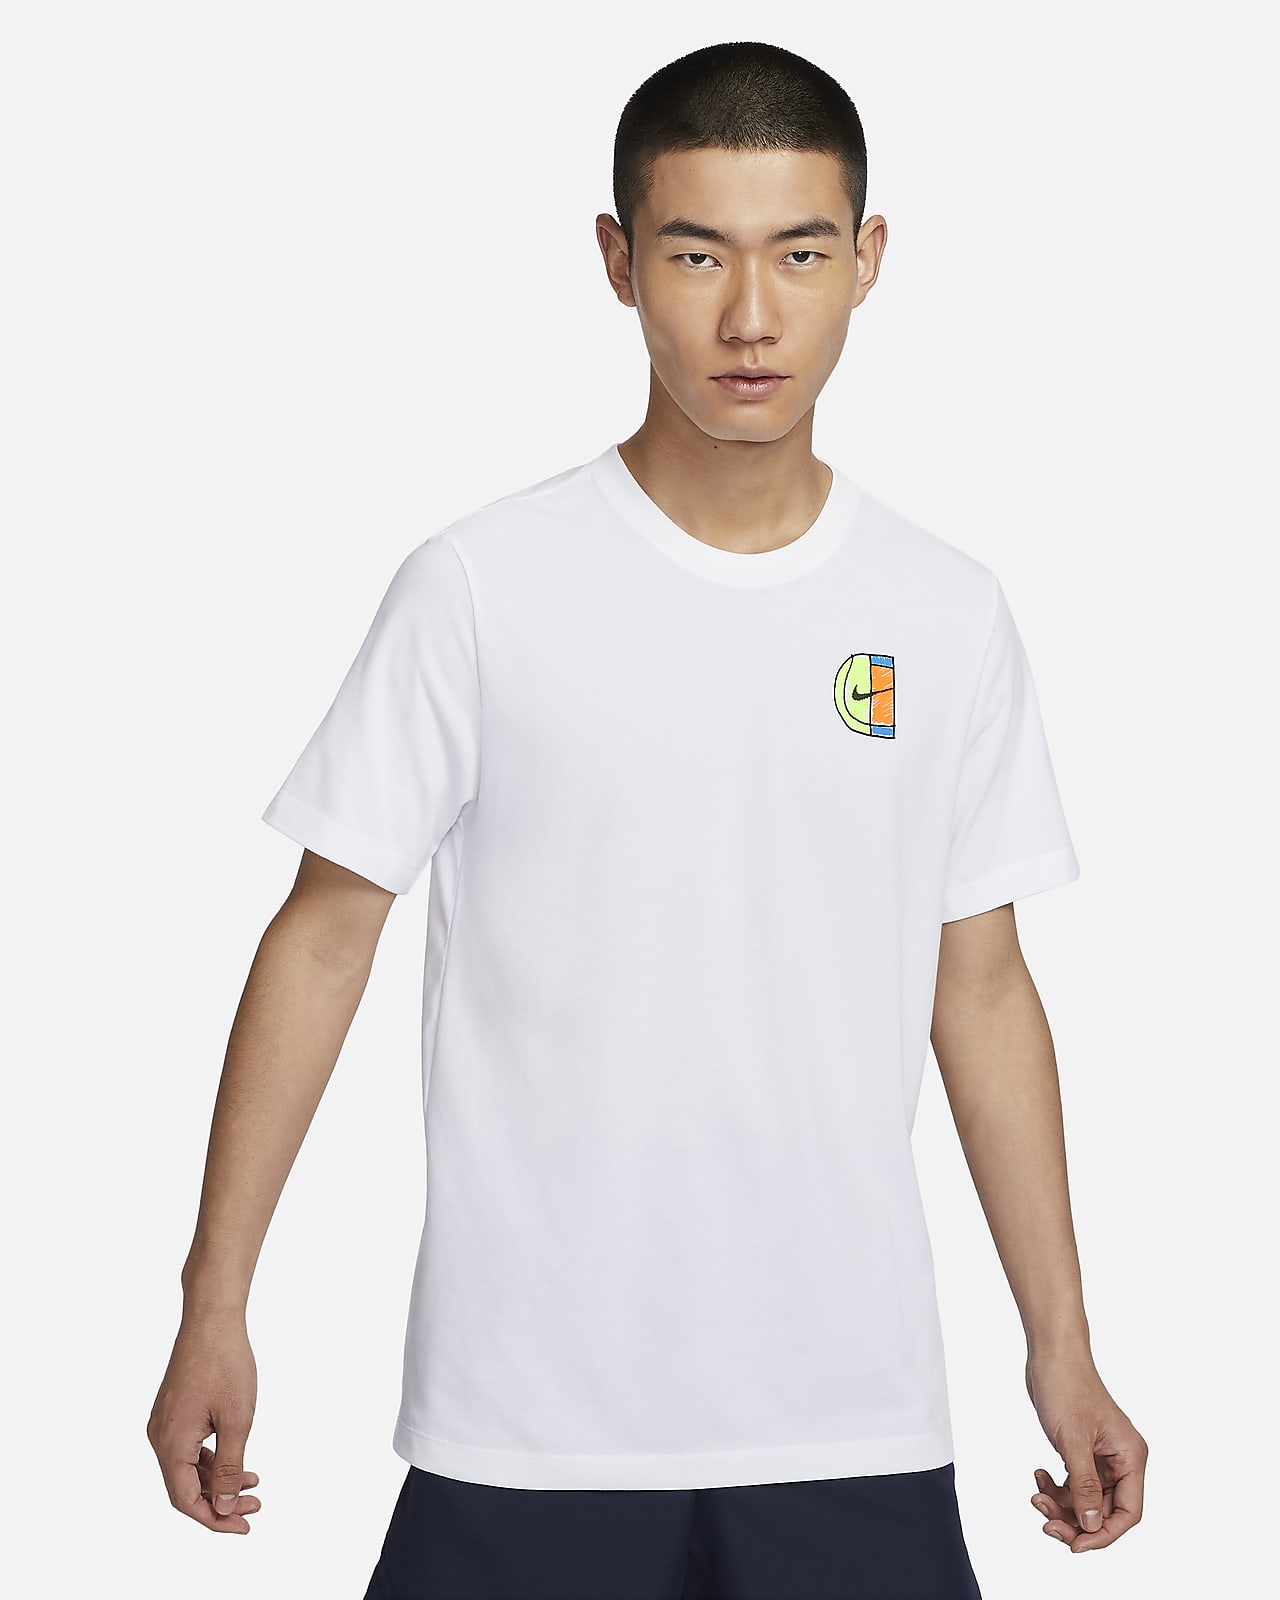 ナイキコート メンズ Dri-FIT テニス Tシャツ